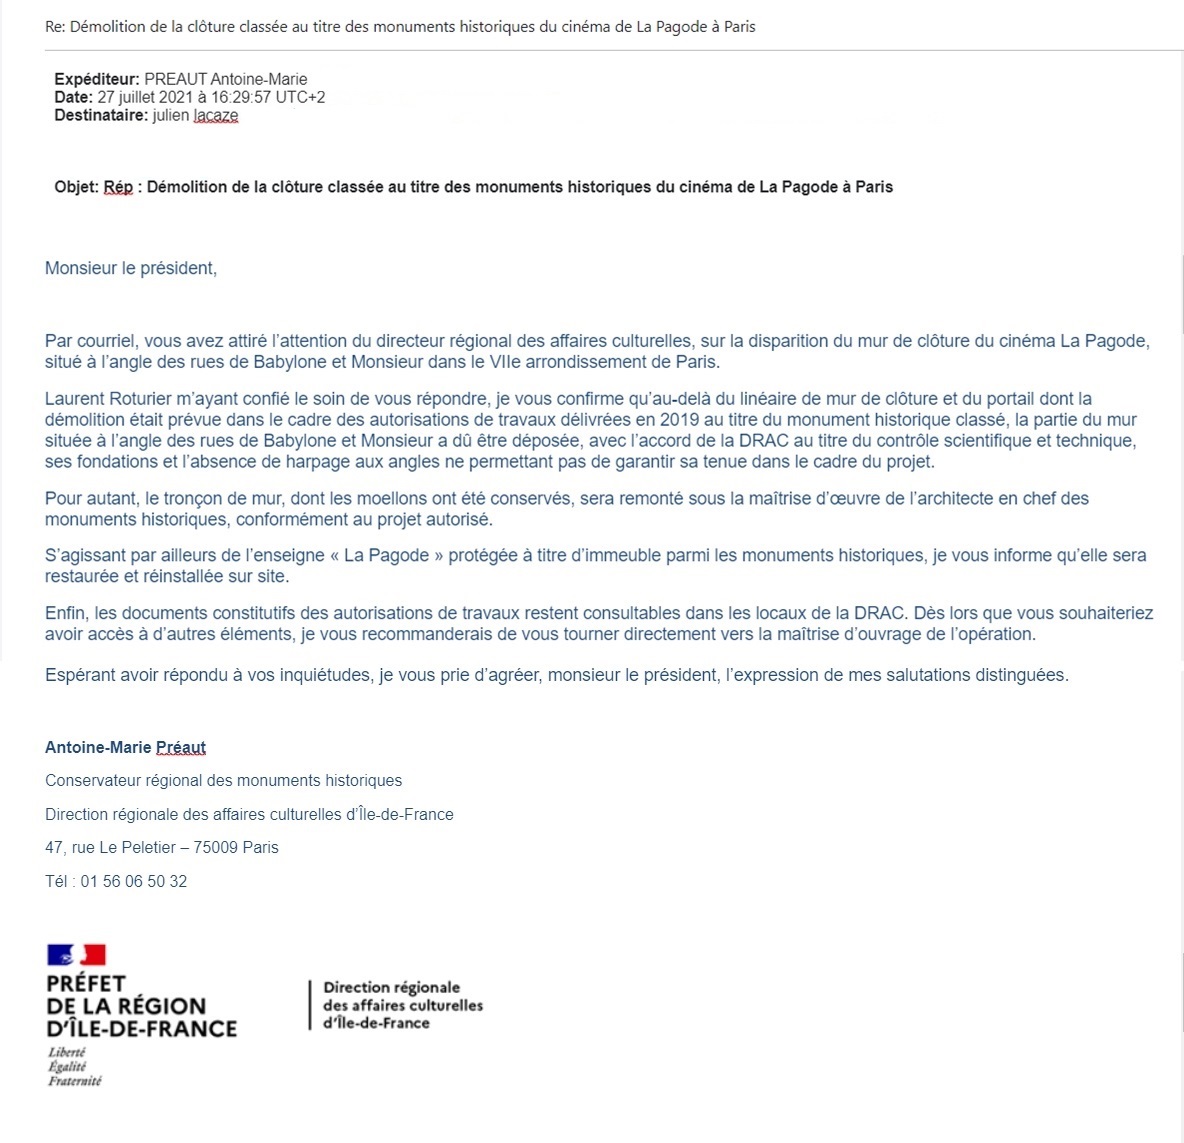 Réponse reçue de la DRAC Ile-de-France le 27 juillet 2021.